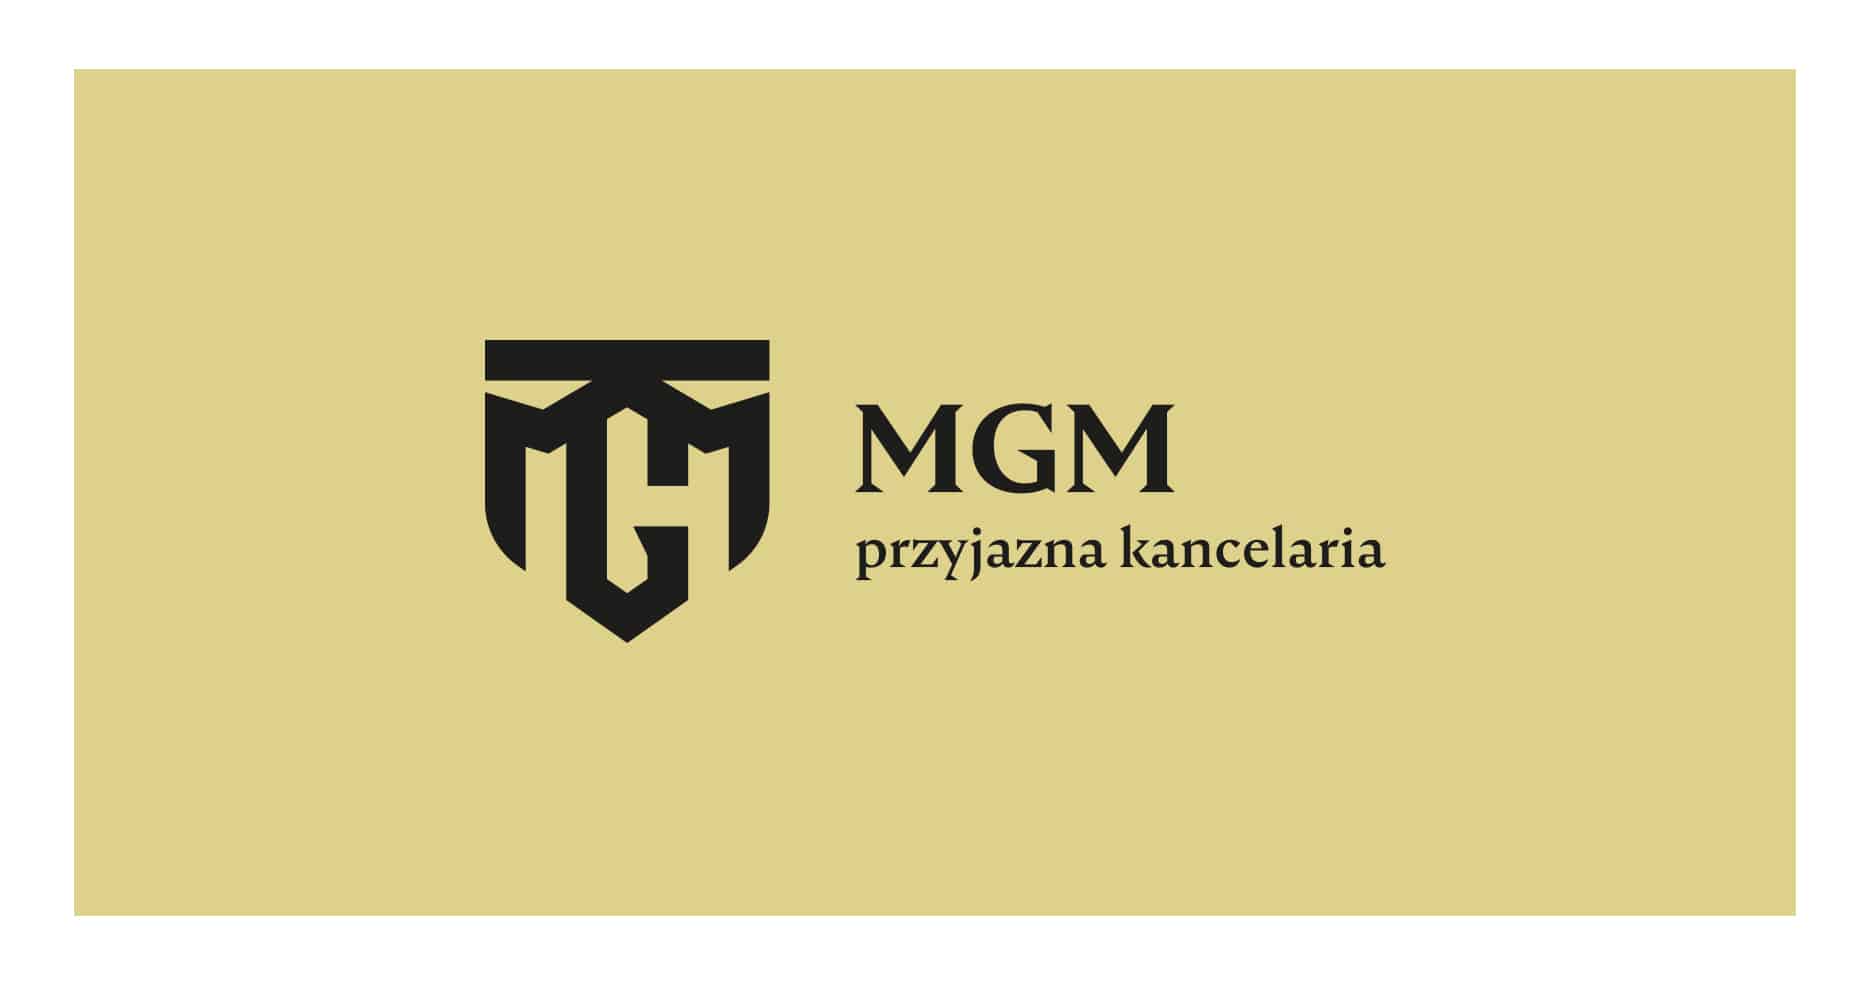 MGM przyjazna kancelaria logo